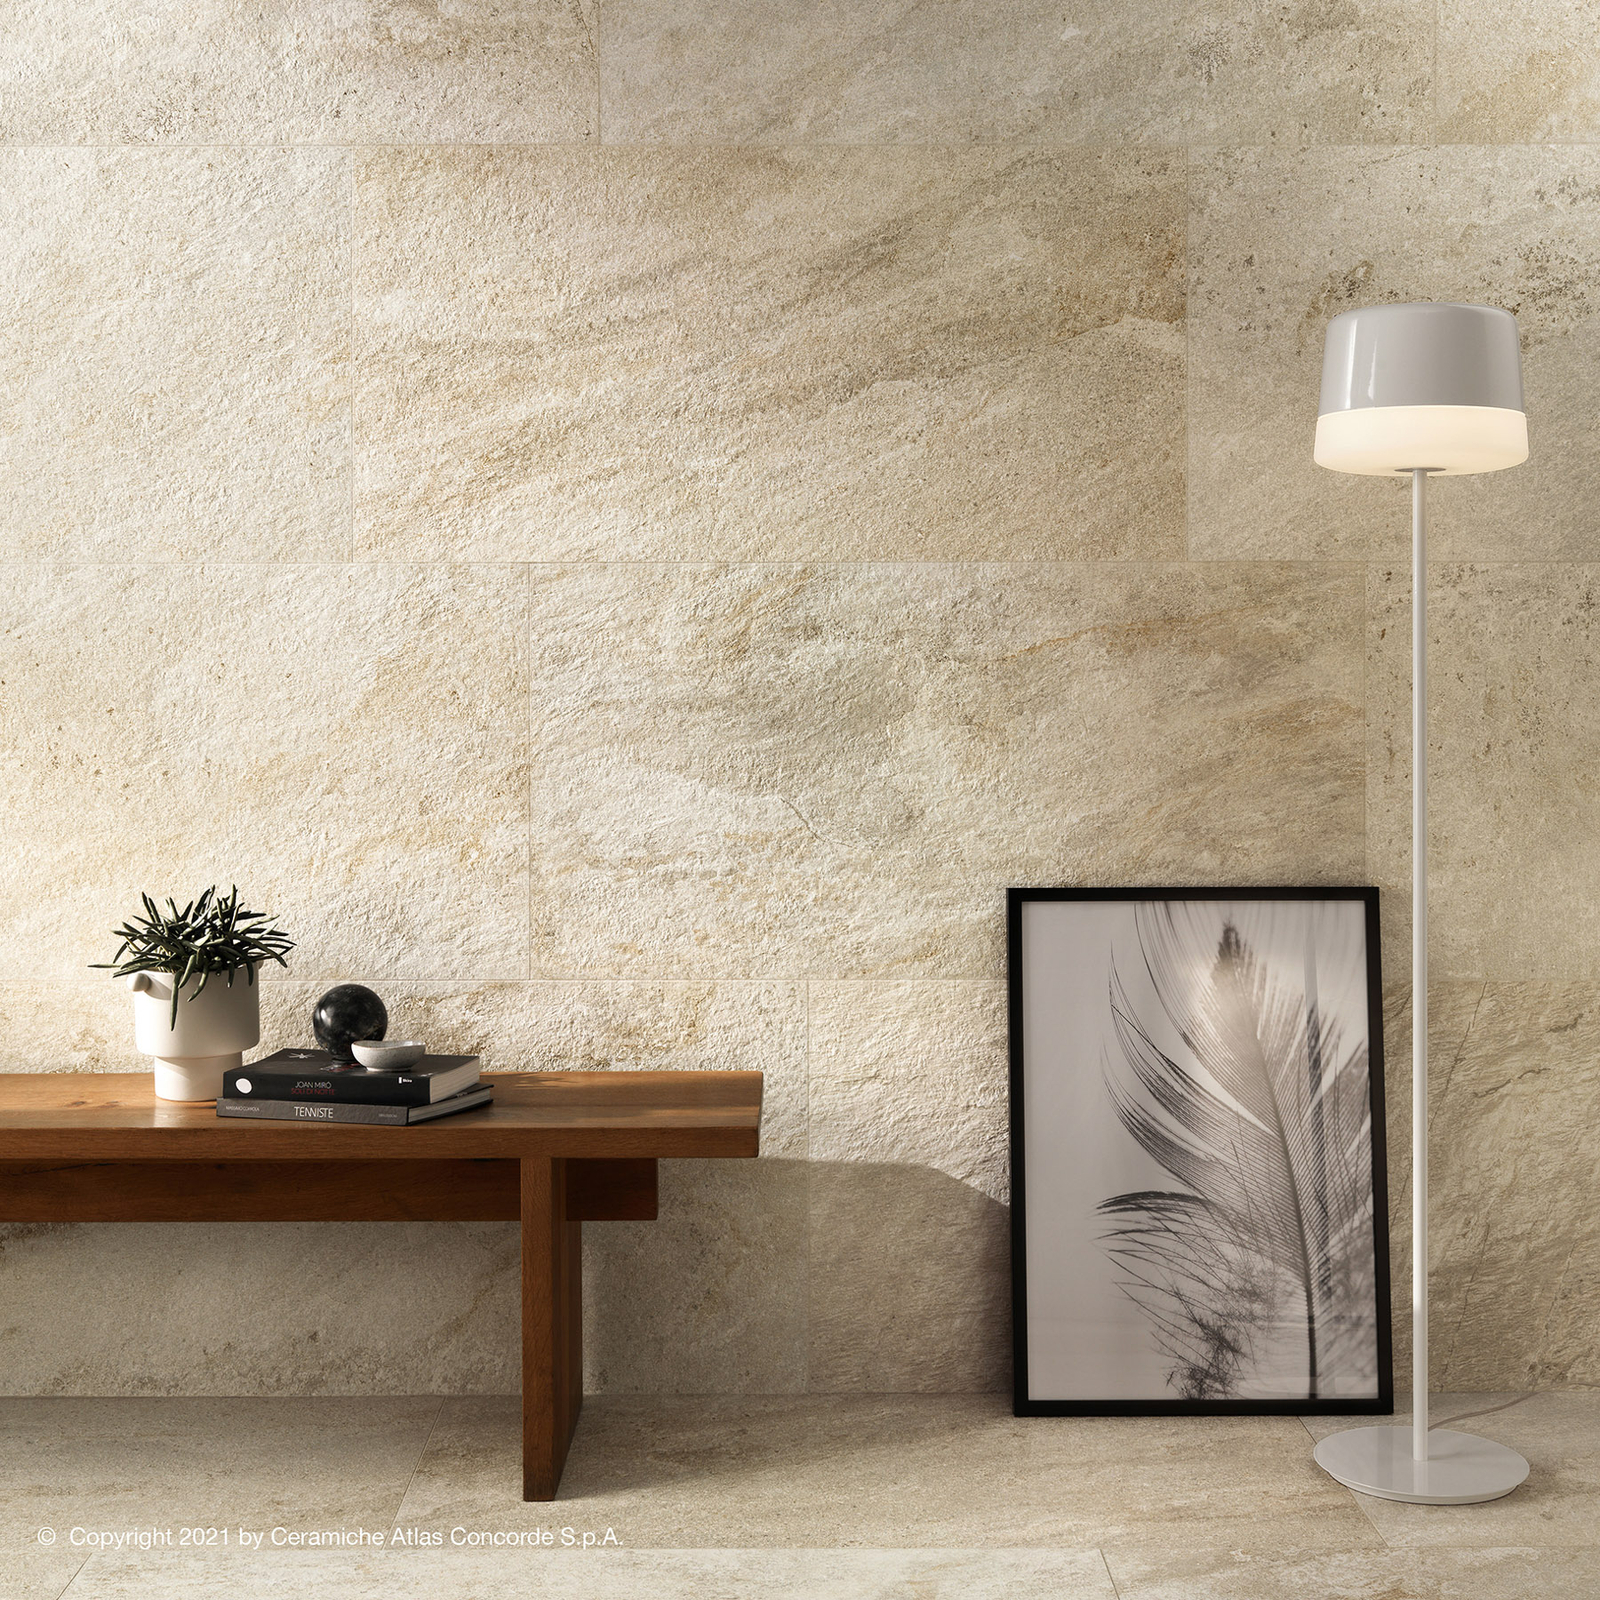 Prandina Gift F10 floor lamp, white